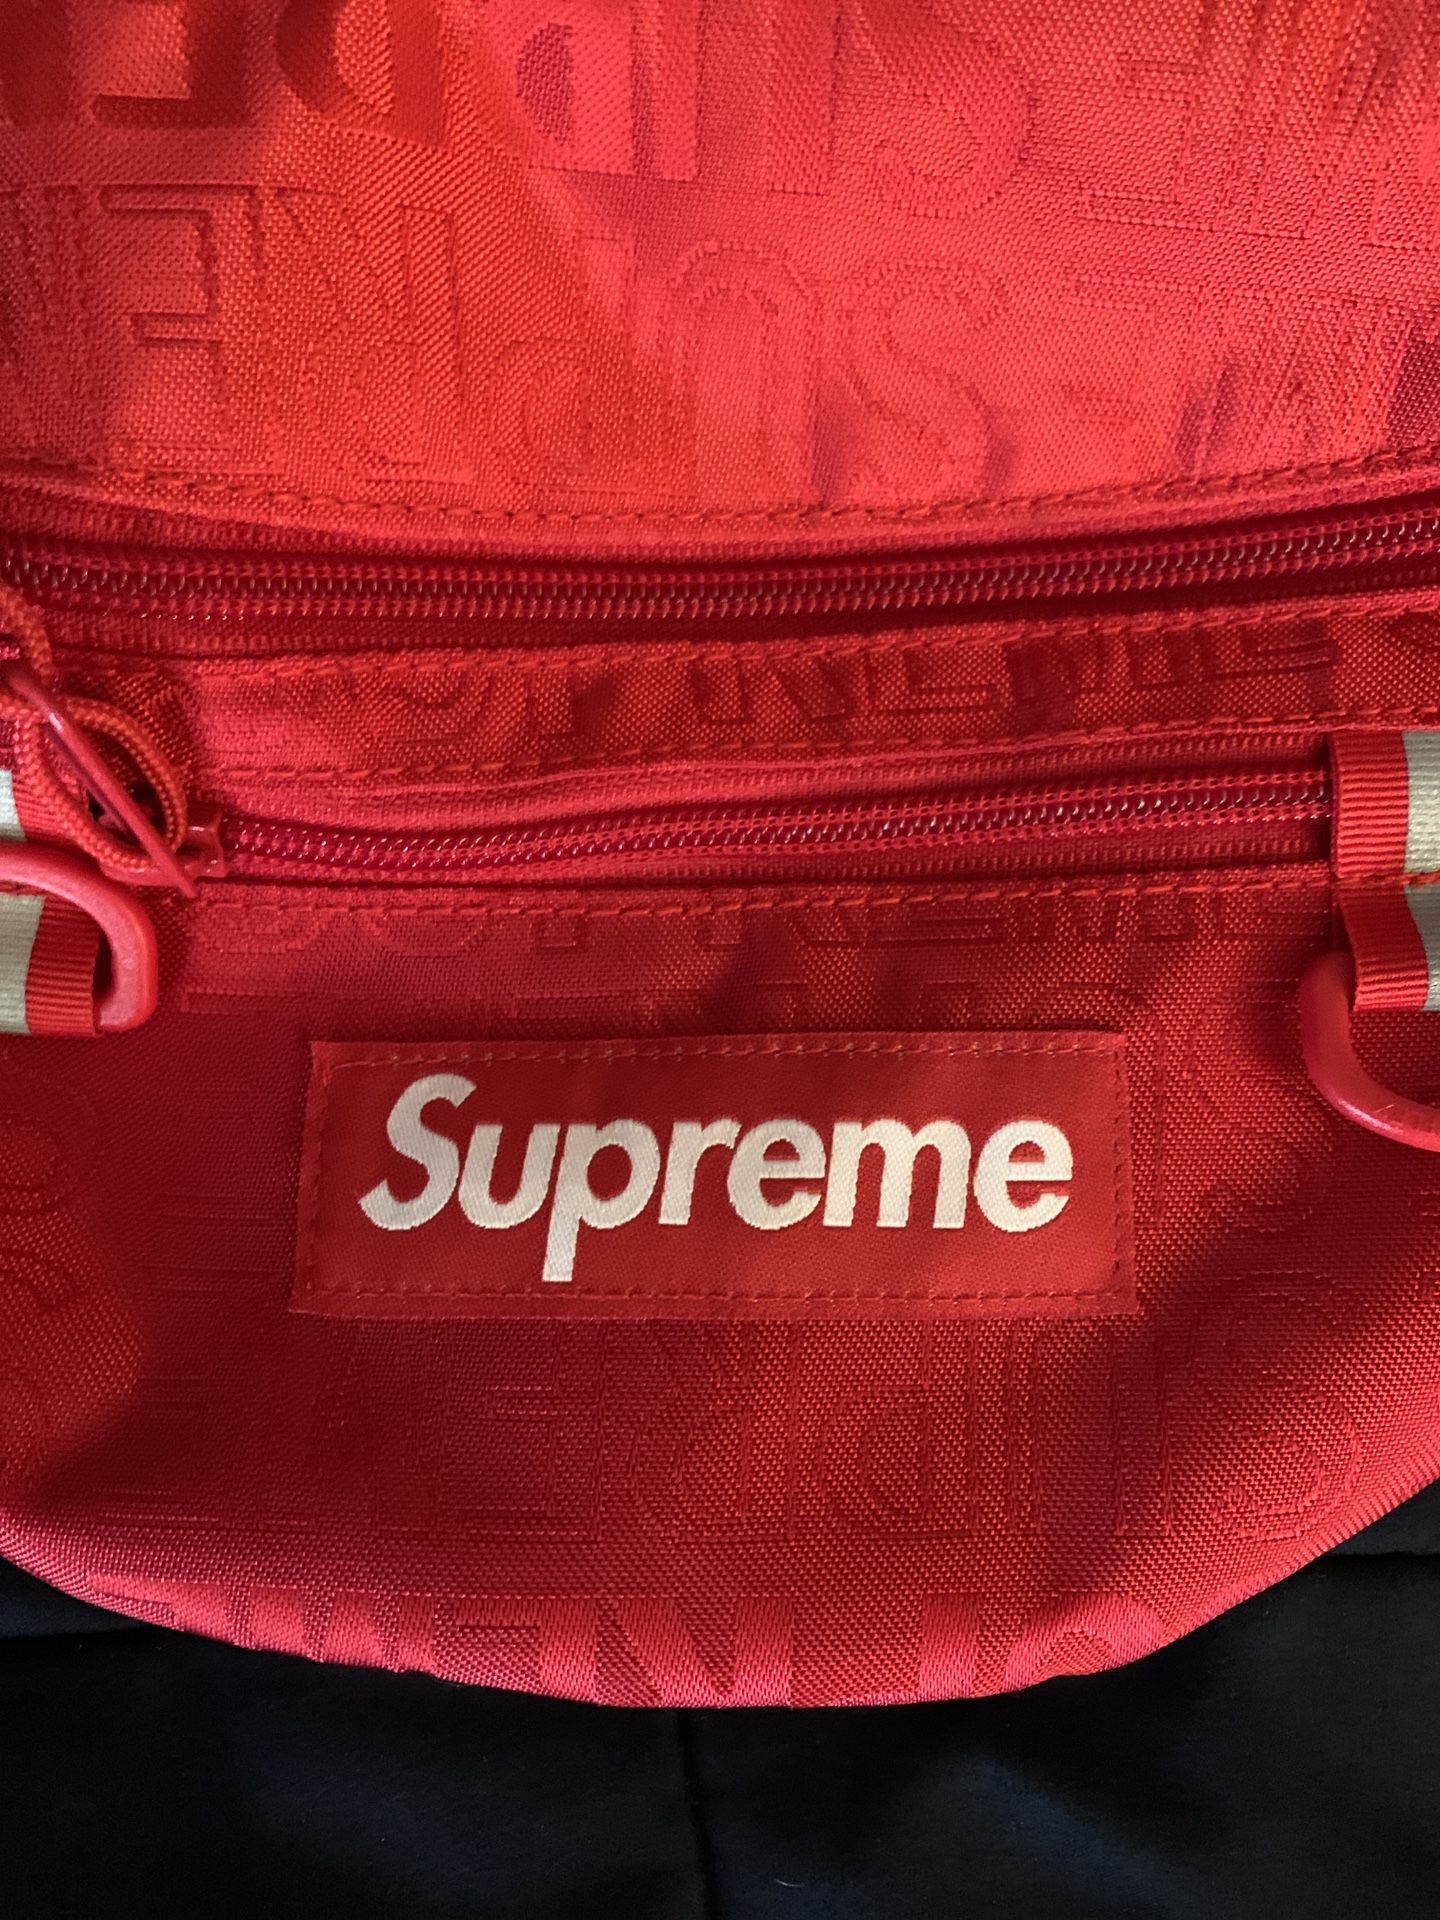 Supreme Waist Bag (SS19)